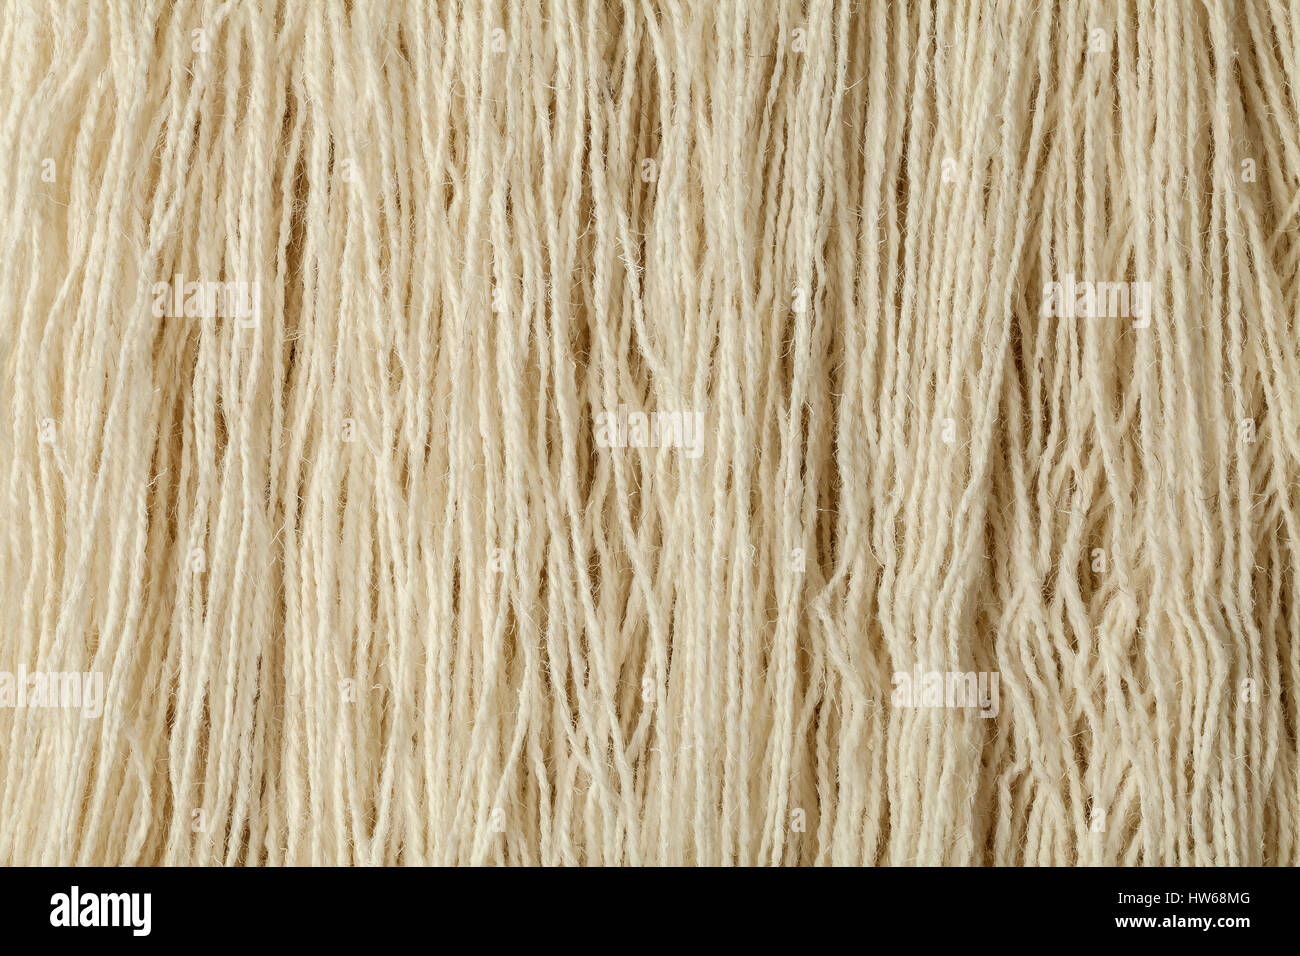 Image de moutons blancs artisan naturel fil de laine avec des aiguilles. Banque D'Images